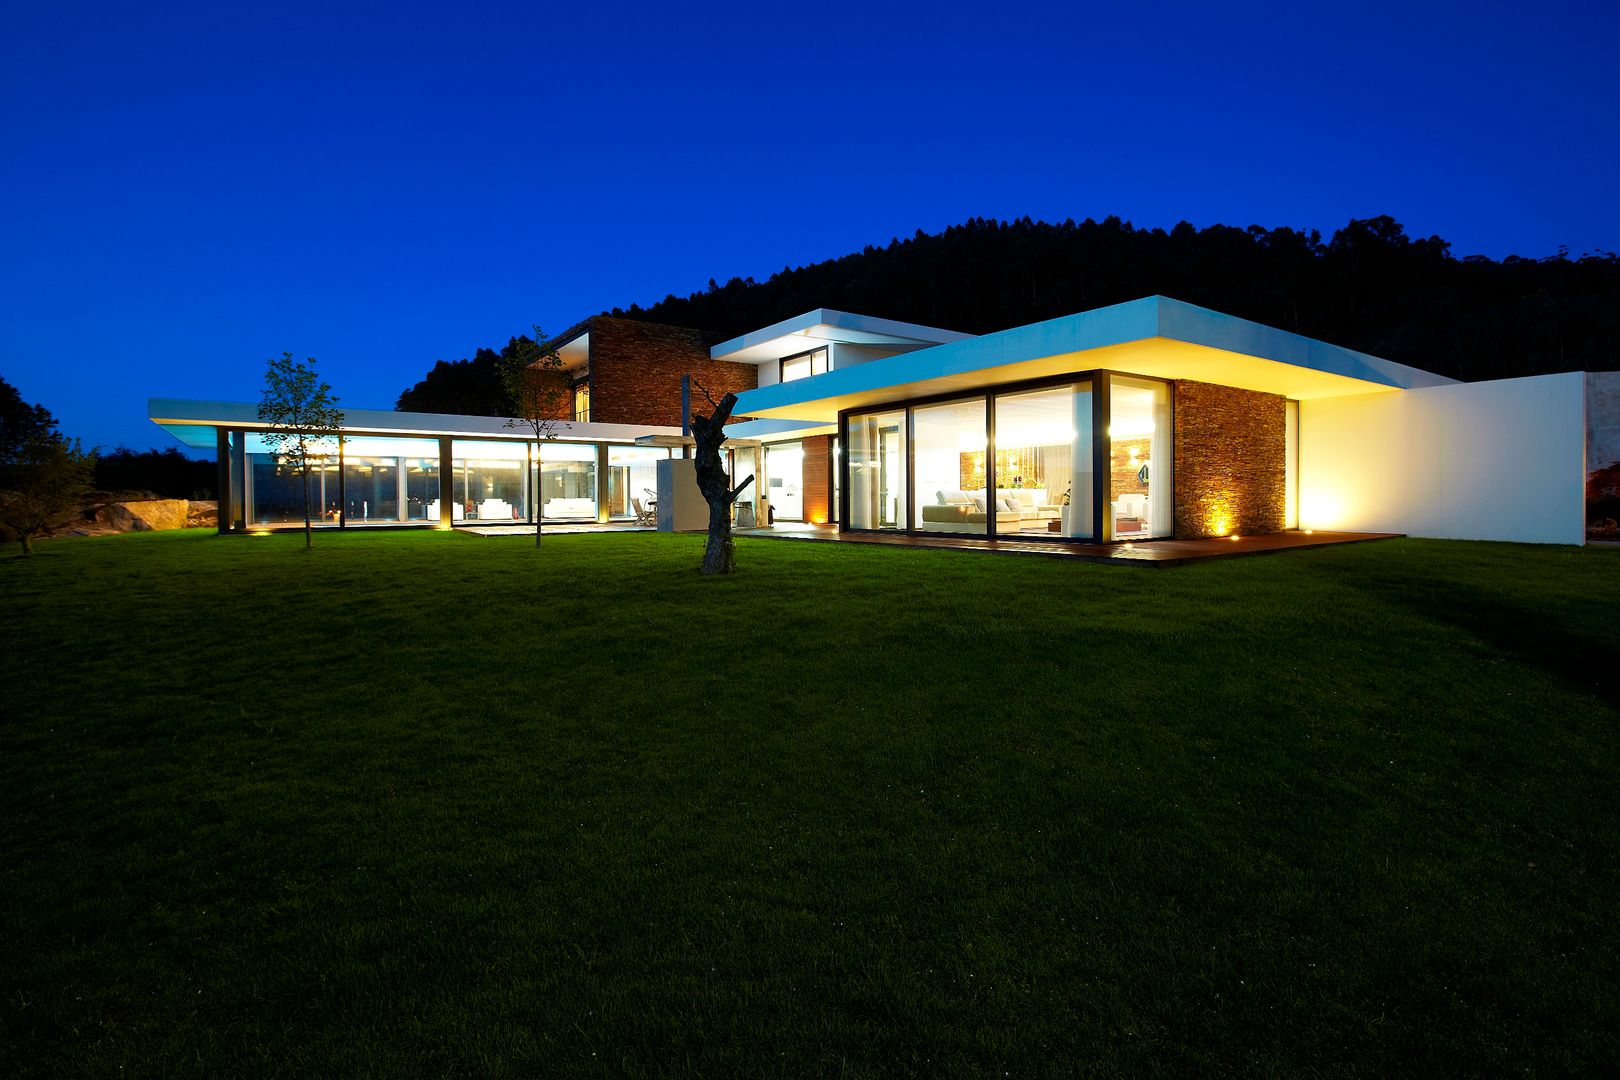 Casa moderna de dimensões generosas e piscina interior, Risco Singular - Arquitectura Lda Risco Singular - Arquitectura Lda Minimalist house